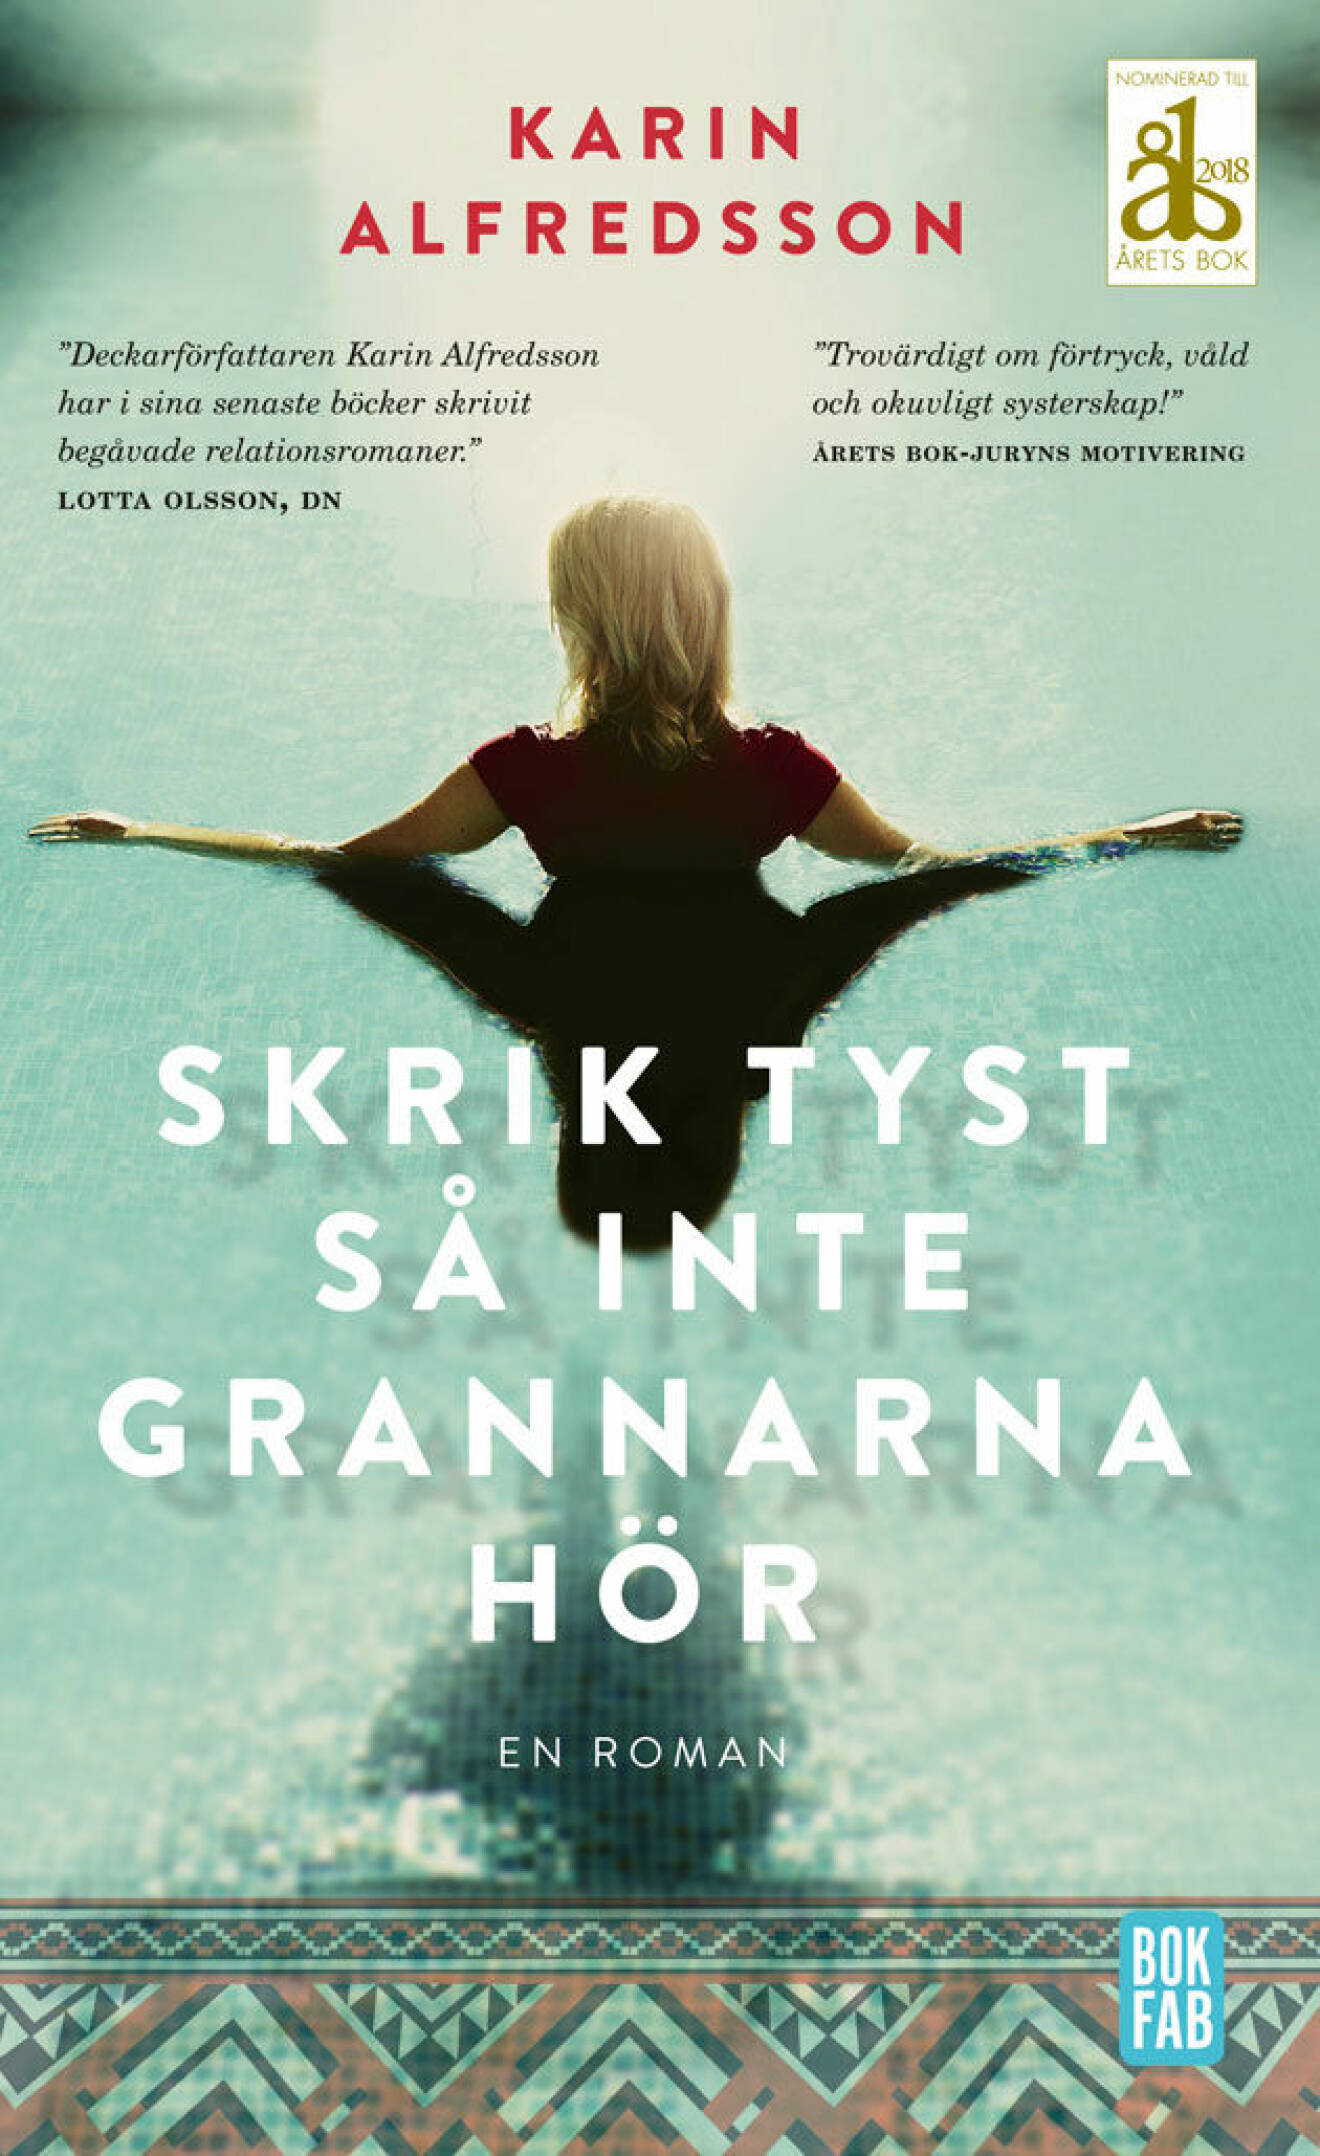 Romanen Skrik tyst så inte grannarna hör av Karin Alfredsson